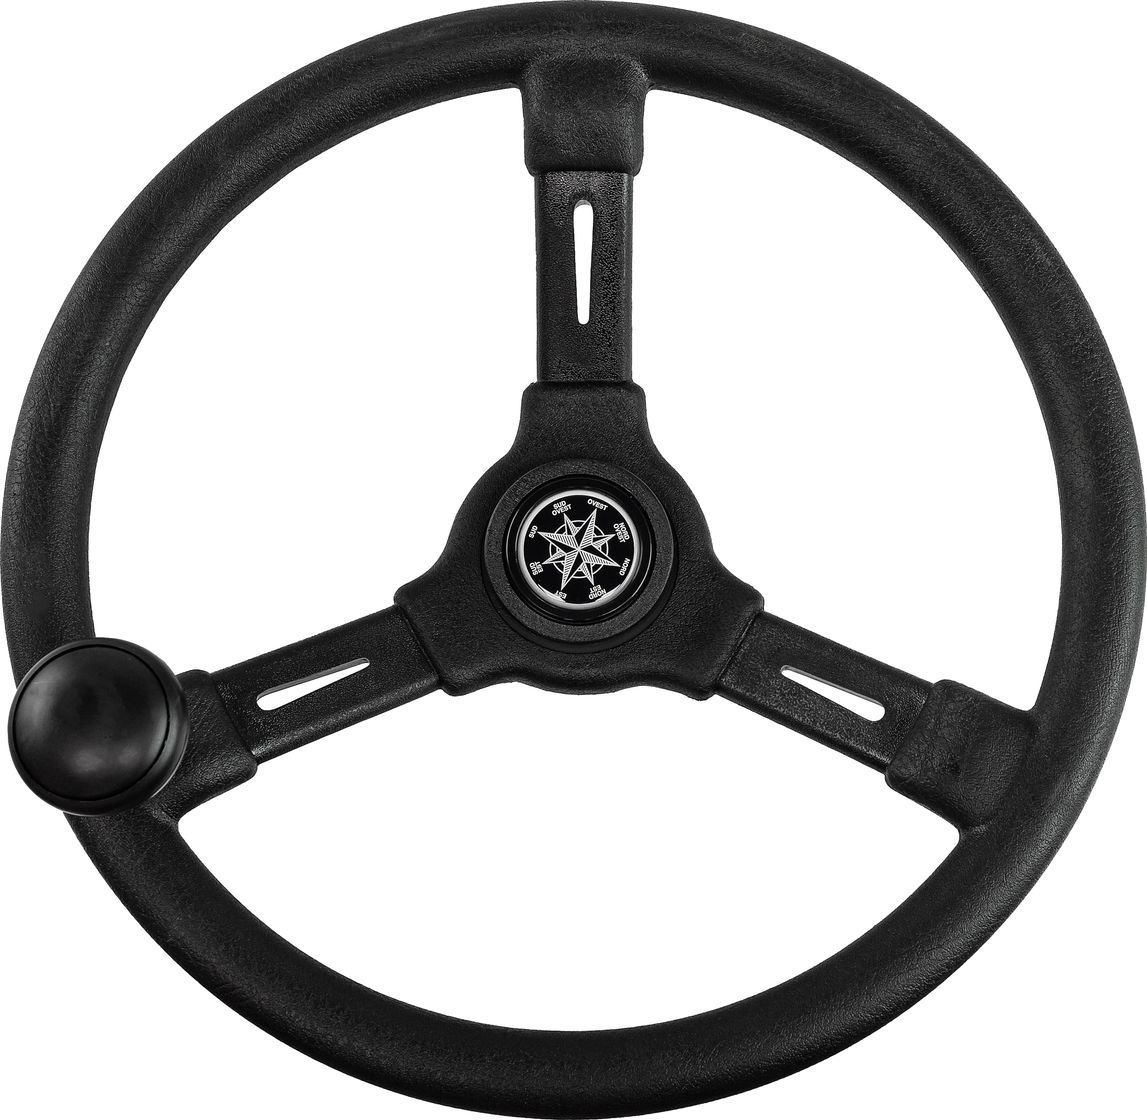 Рулевое колесо RIVIERA черный обод и спицы д. 350 мм со спинером VN8250-01 рулевое колесо matrix черный обод more 10016473